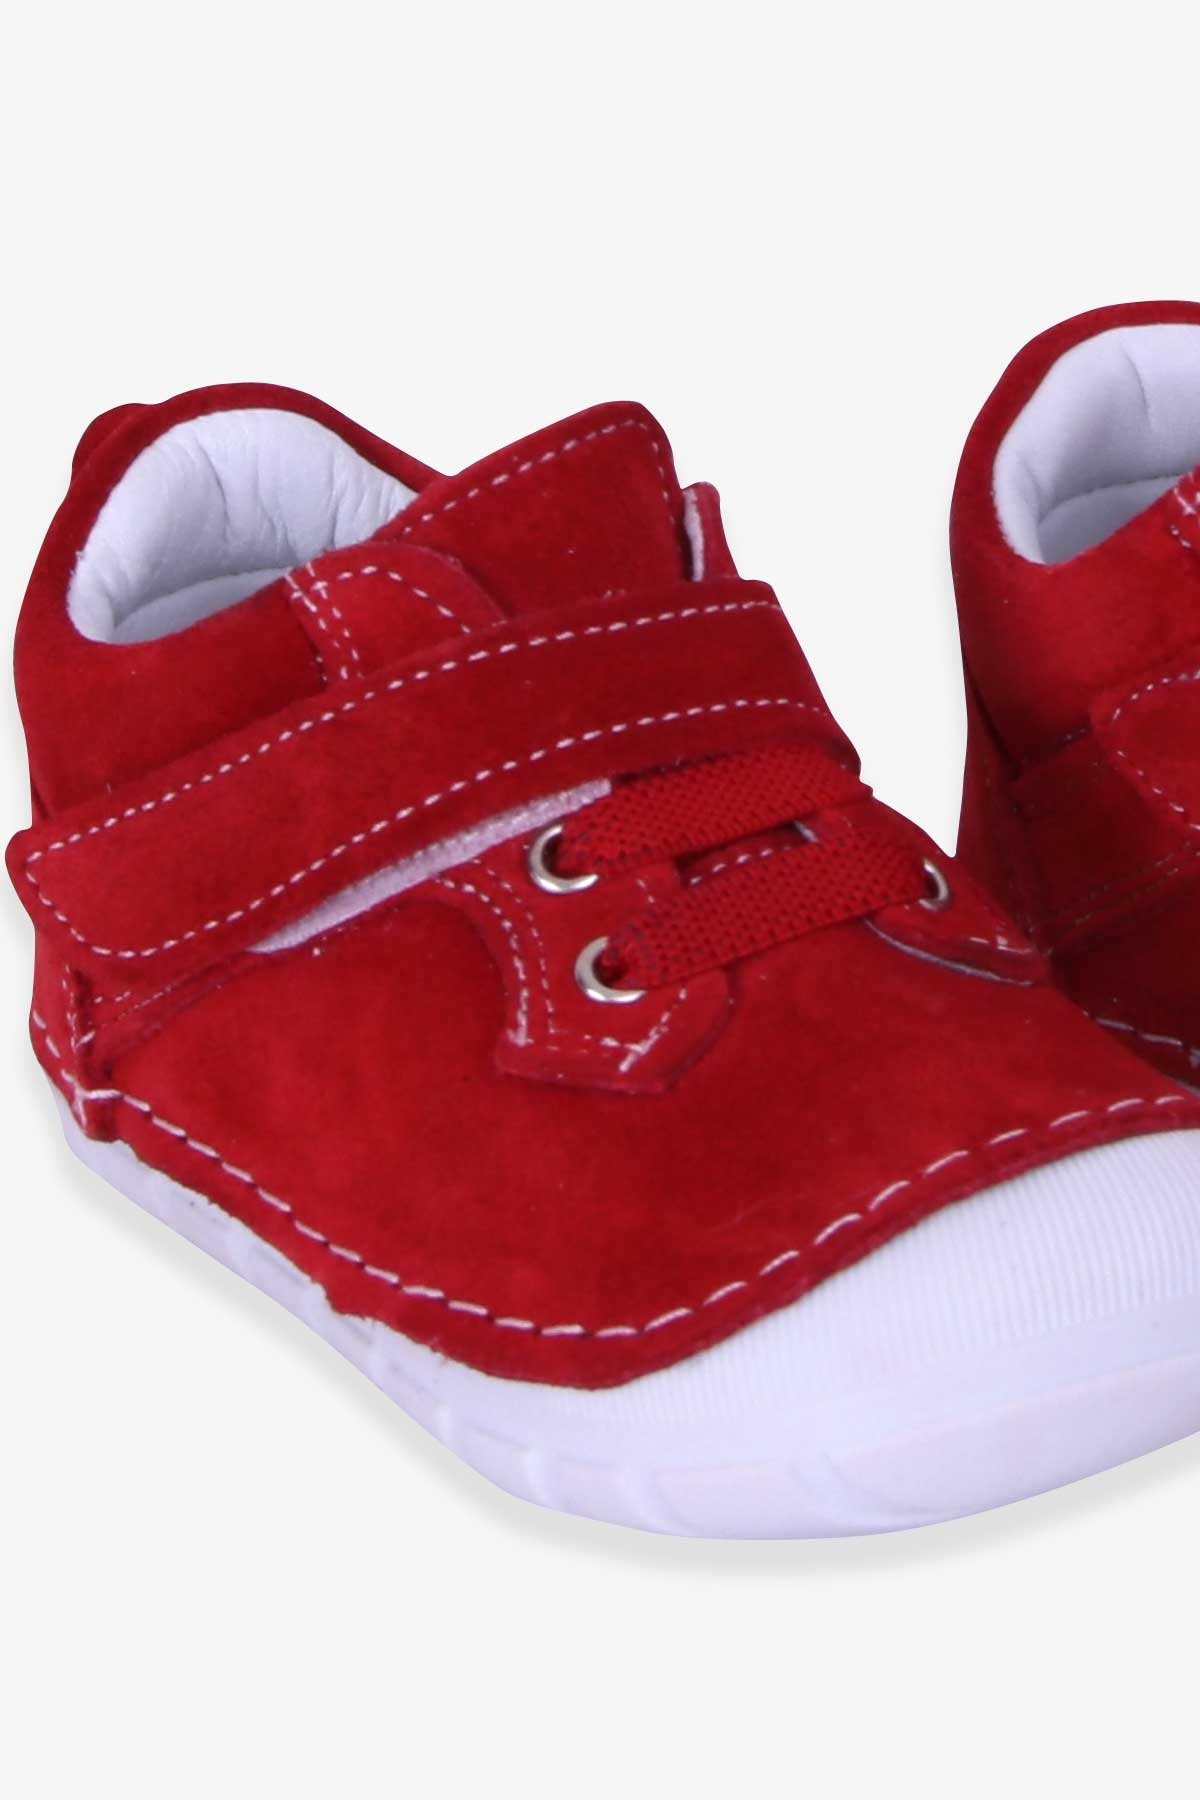 Kız Çocuk Cırtlı Süet Ayakkabı Kırmızı 20-21 Numara - Tatlı Modeller |  Breeze